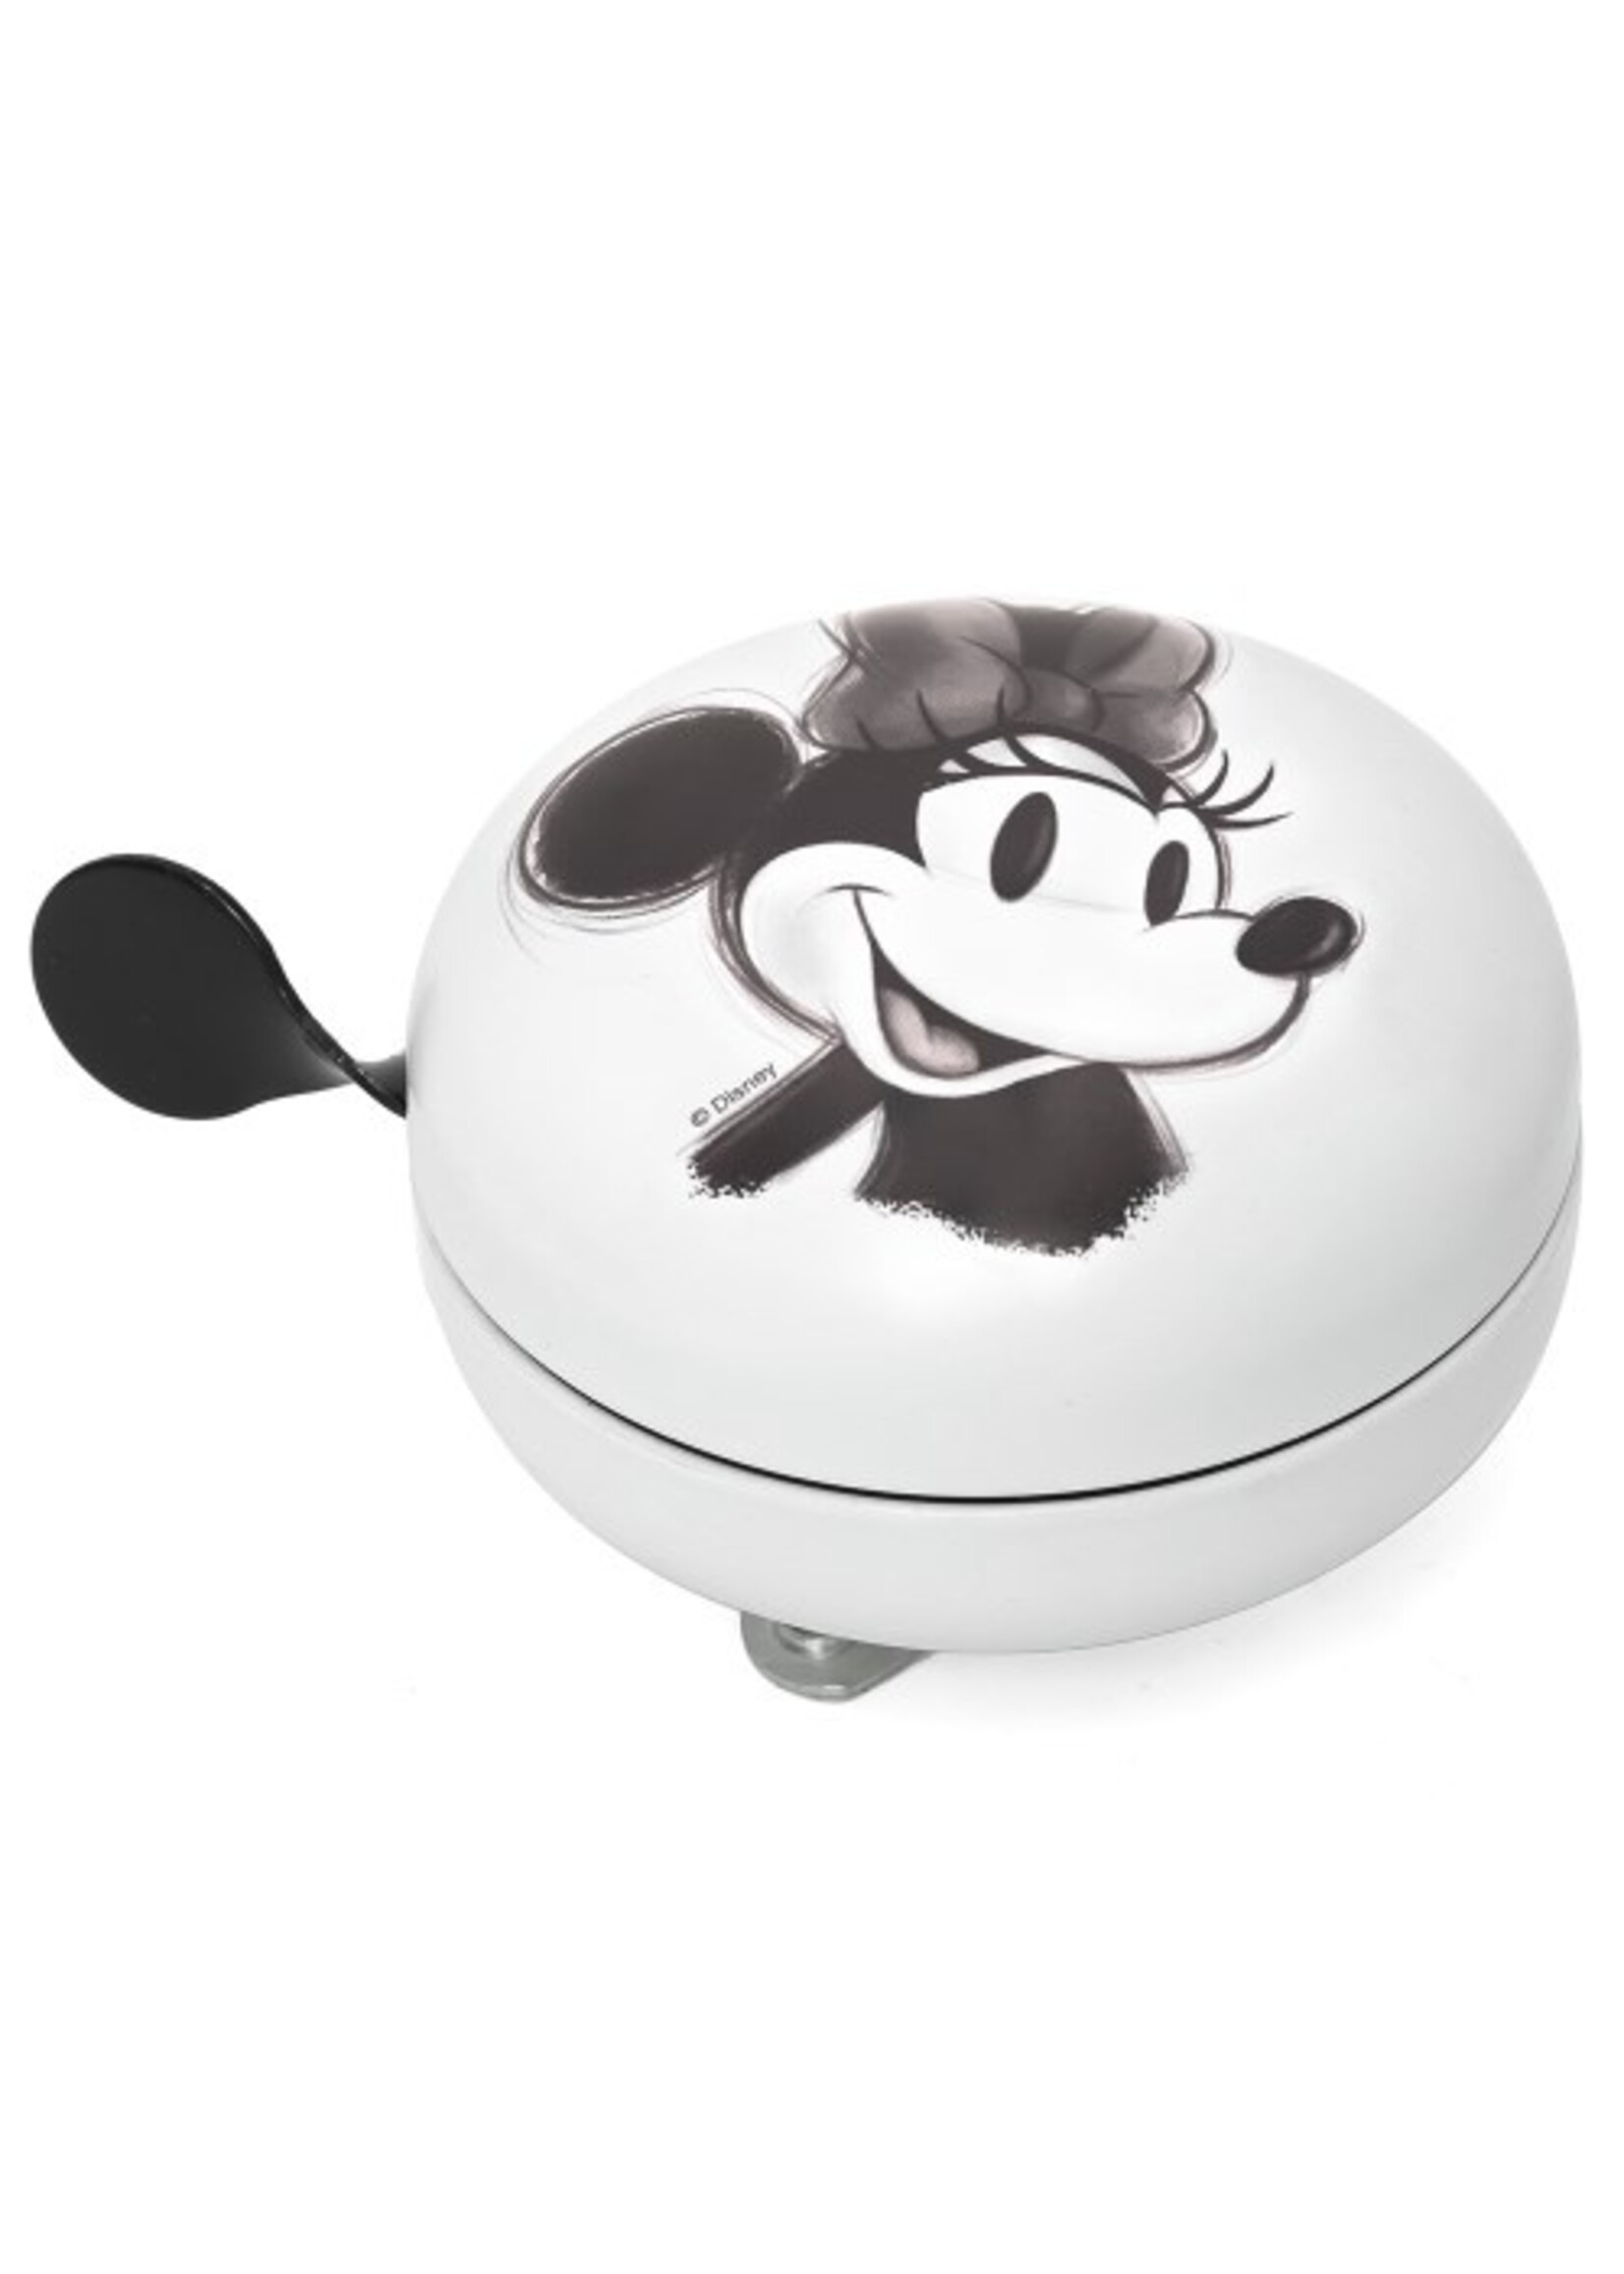 Disney Juniorski dzwonek rowerowy Myszka Minnie z bajki Disney w kolorze białym